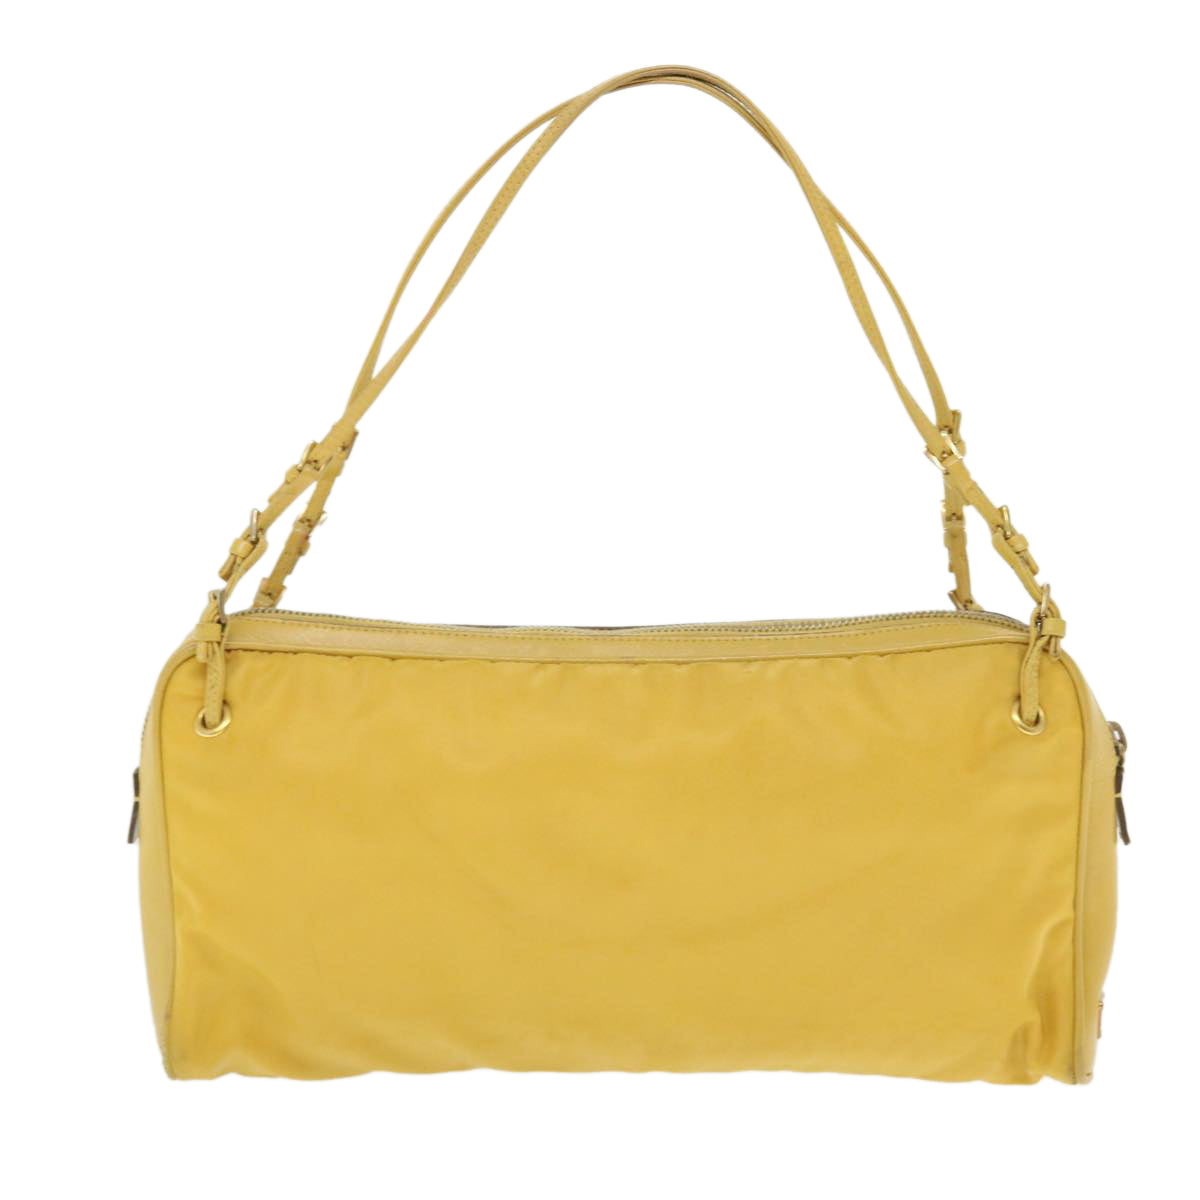 PRADA Hand Bag Nylon Yellow Auth 52243 - 0